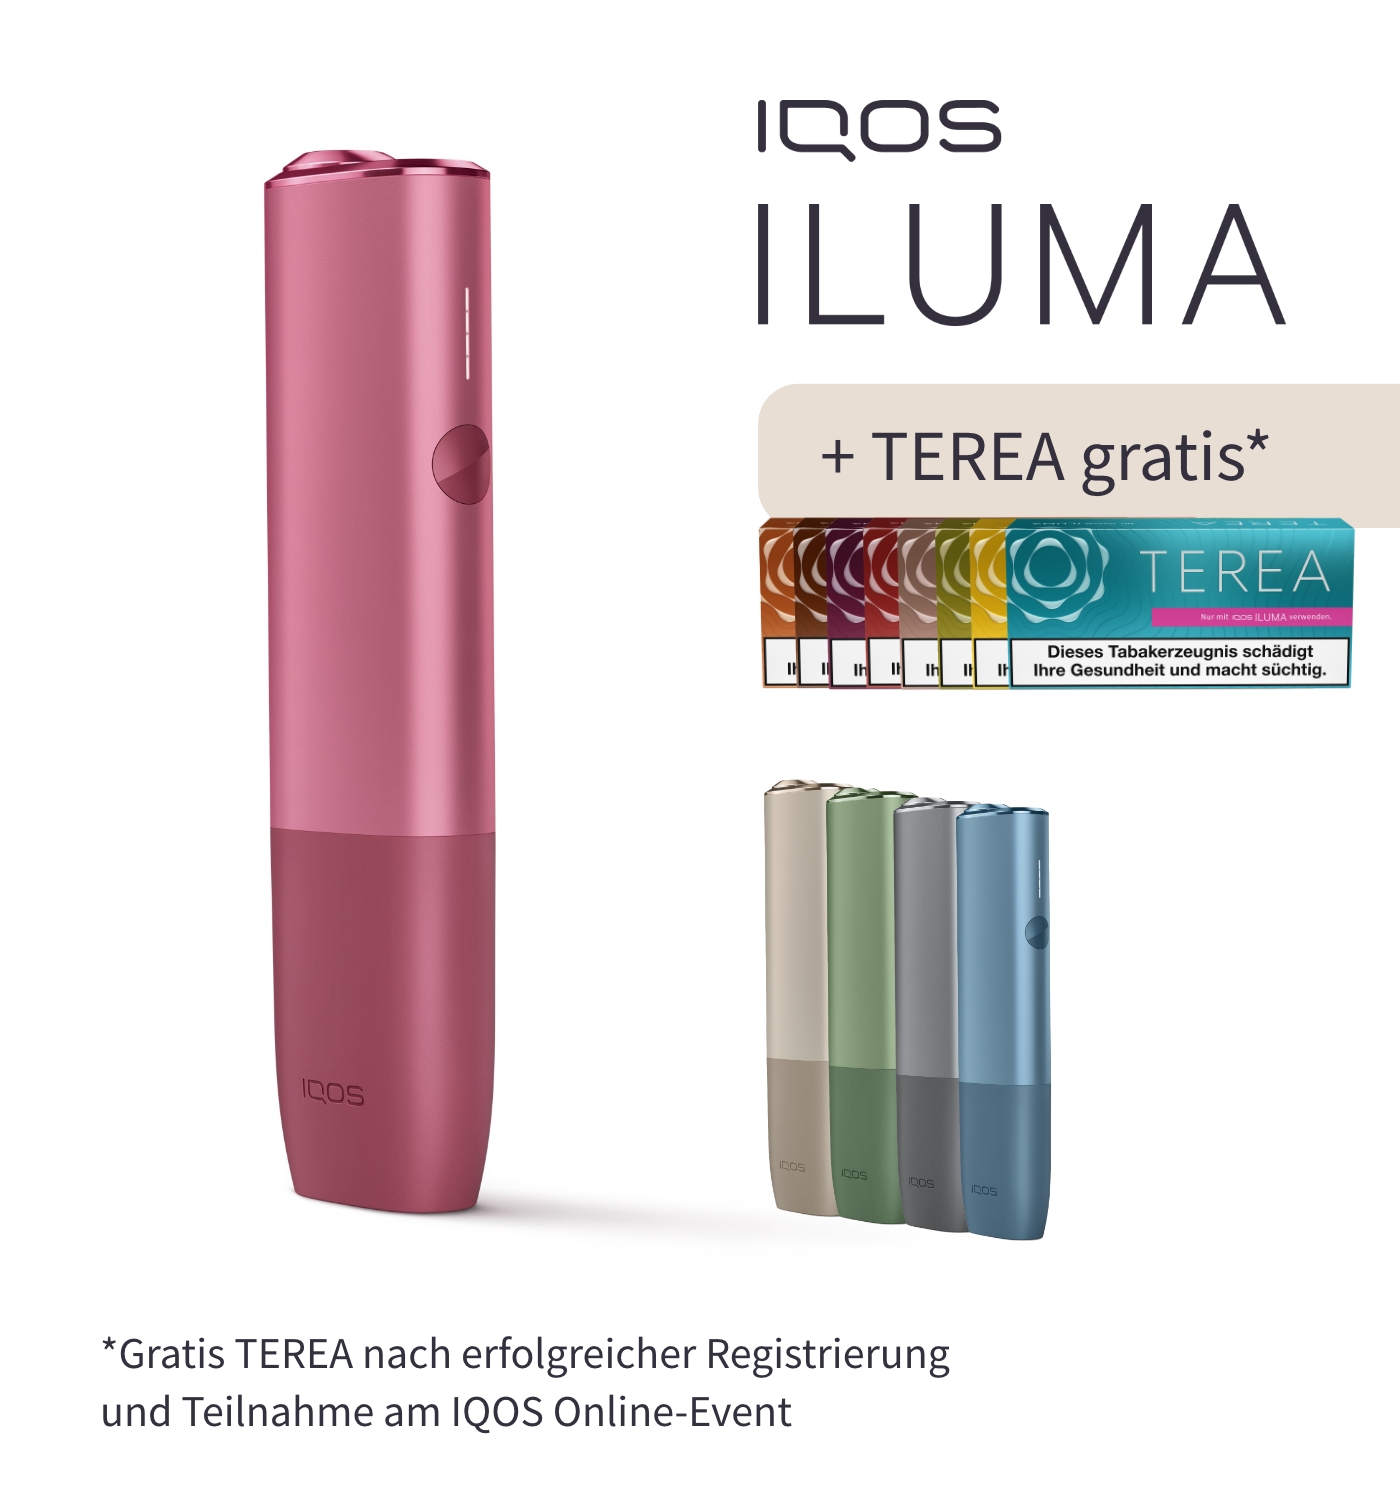 IQOS Iluma Terea Teak, 20 Stück, 7,00 Euro